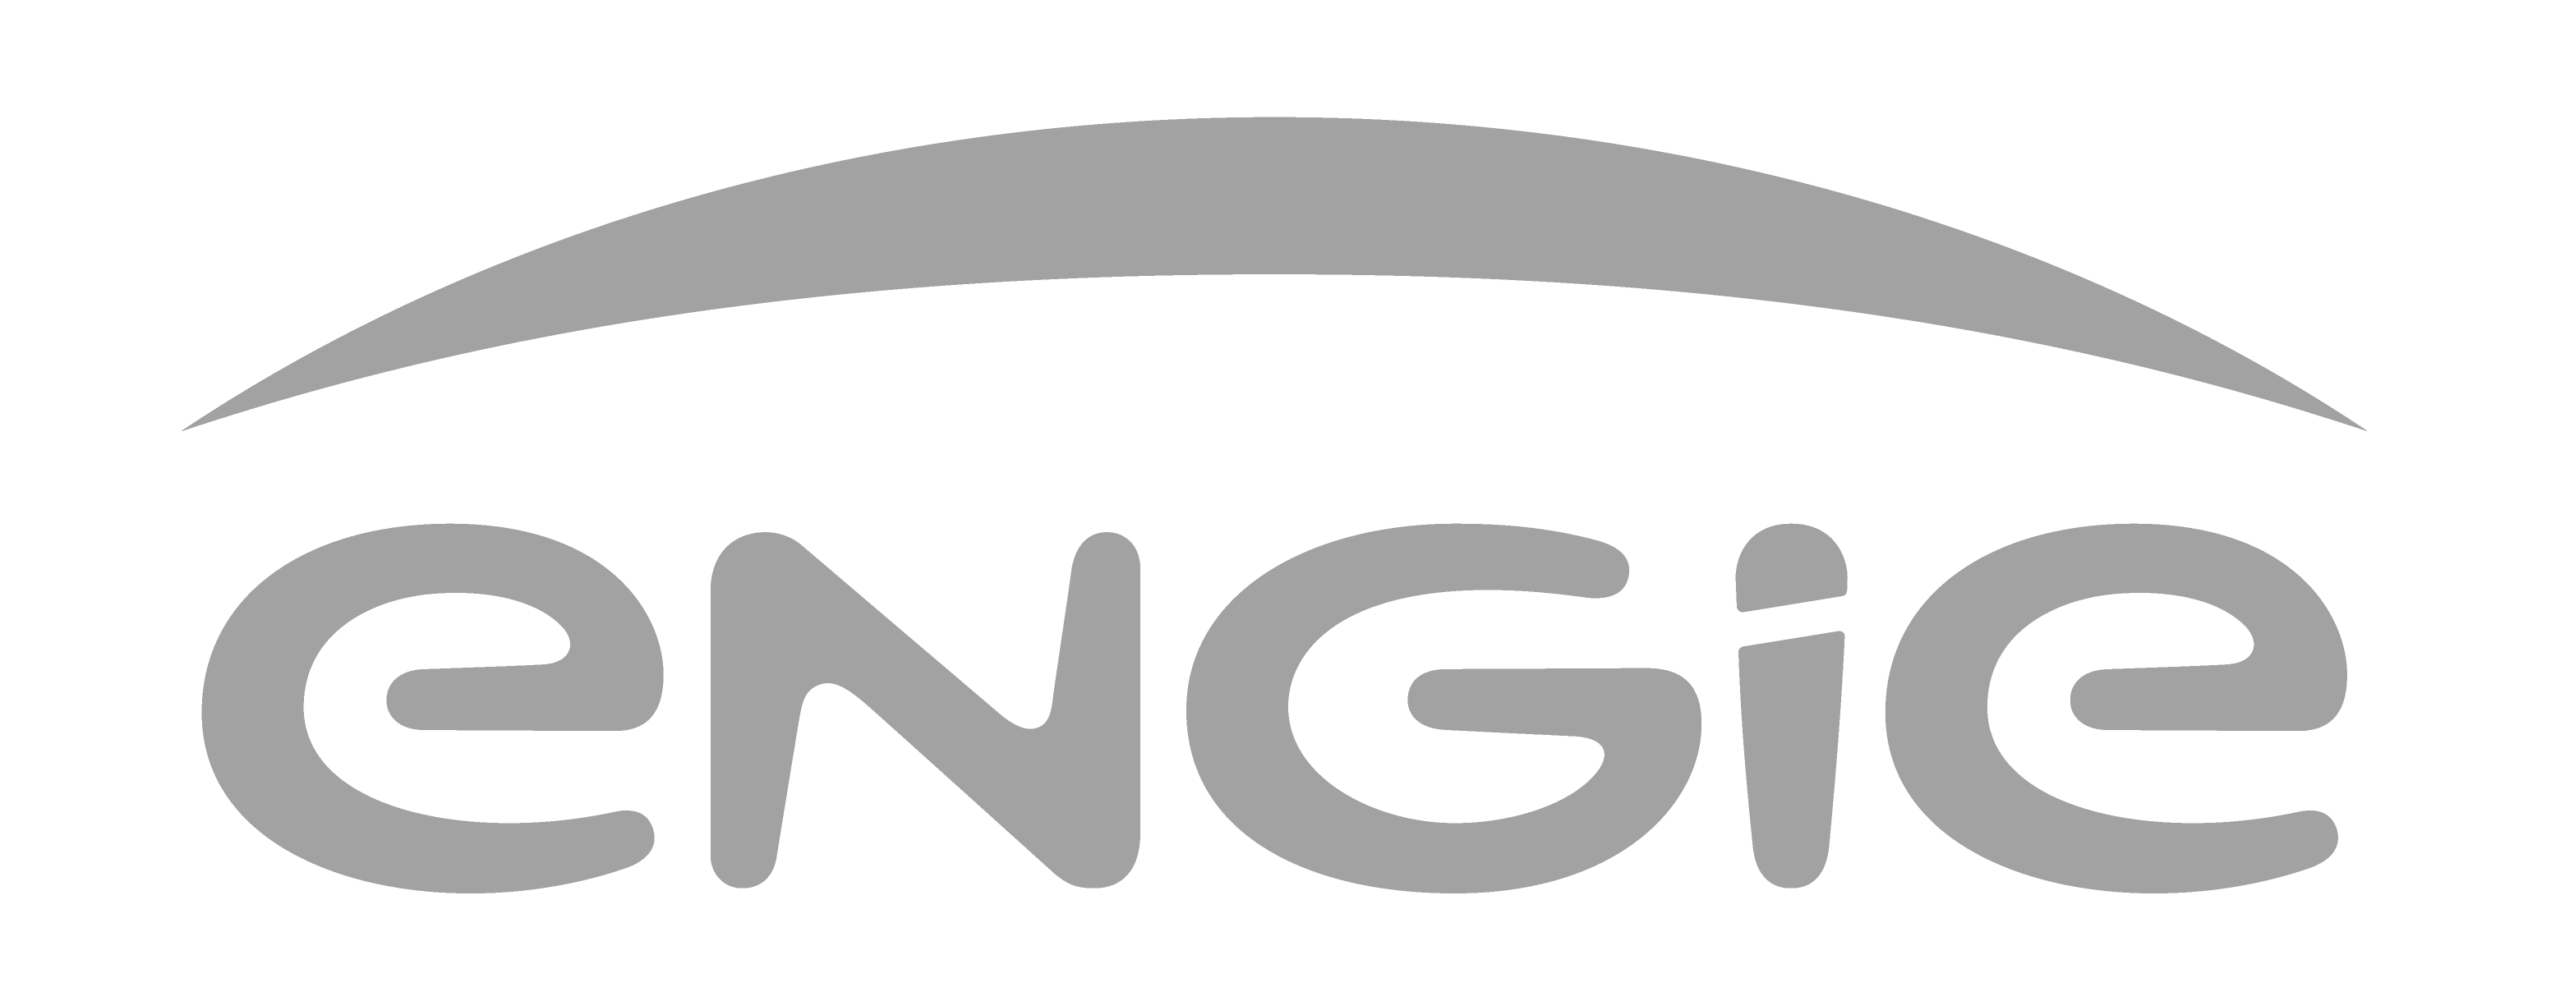 ENGIE logotype 2018 1